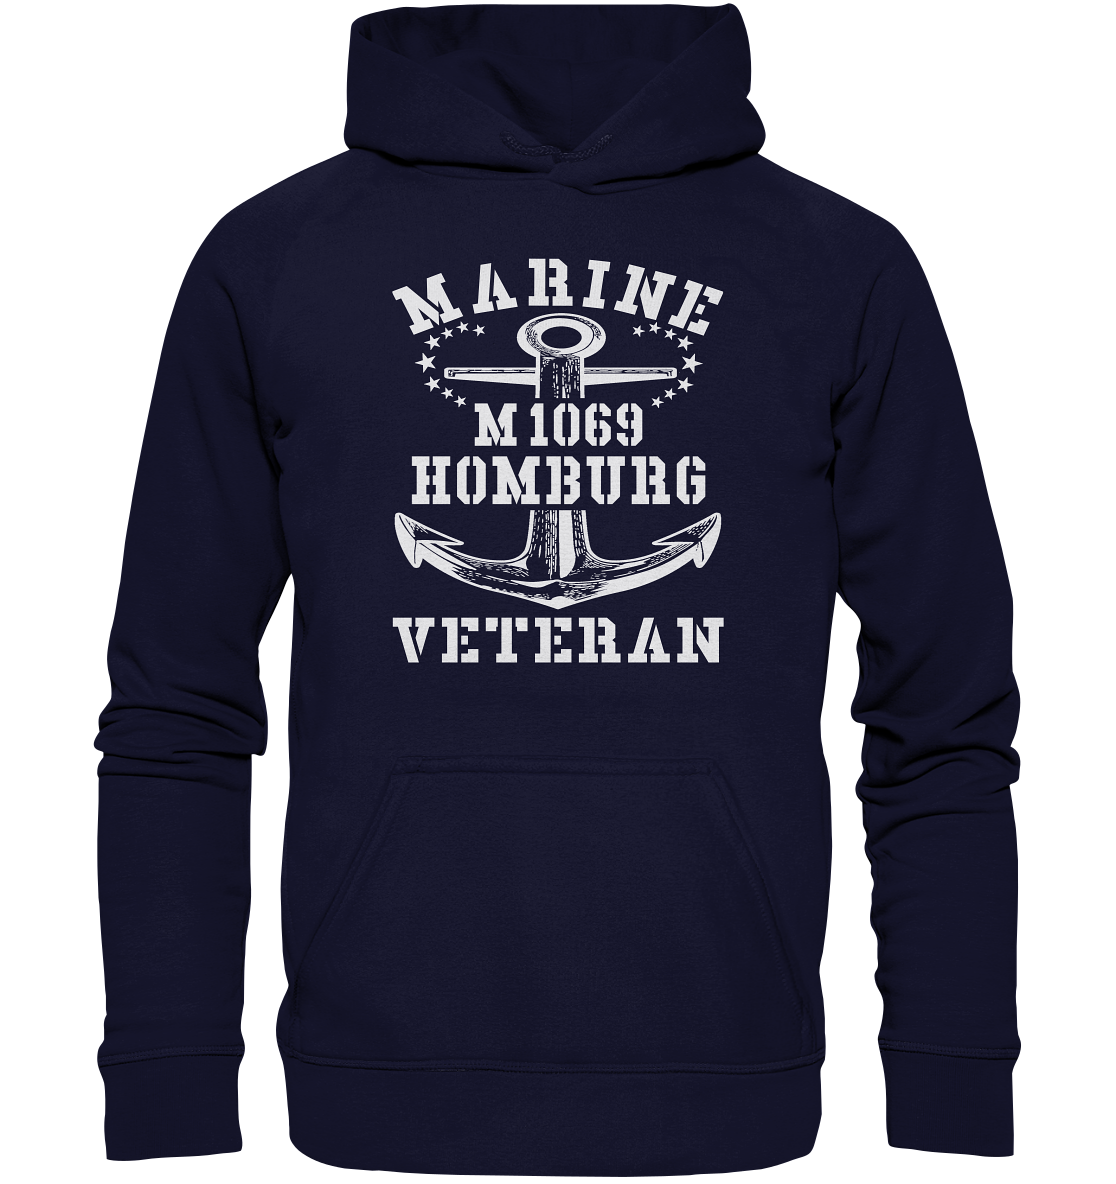 Mij.-Boot M1069 HOMBURG Marine Veteran - Basic Unisex Hoodie XL